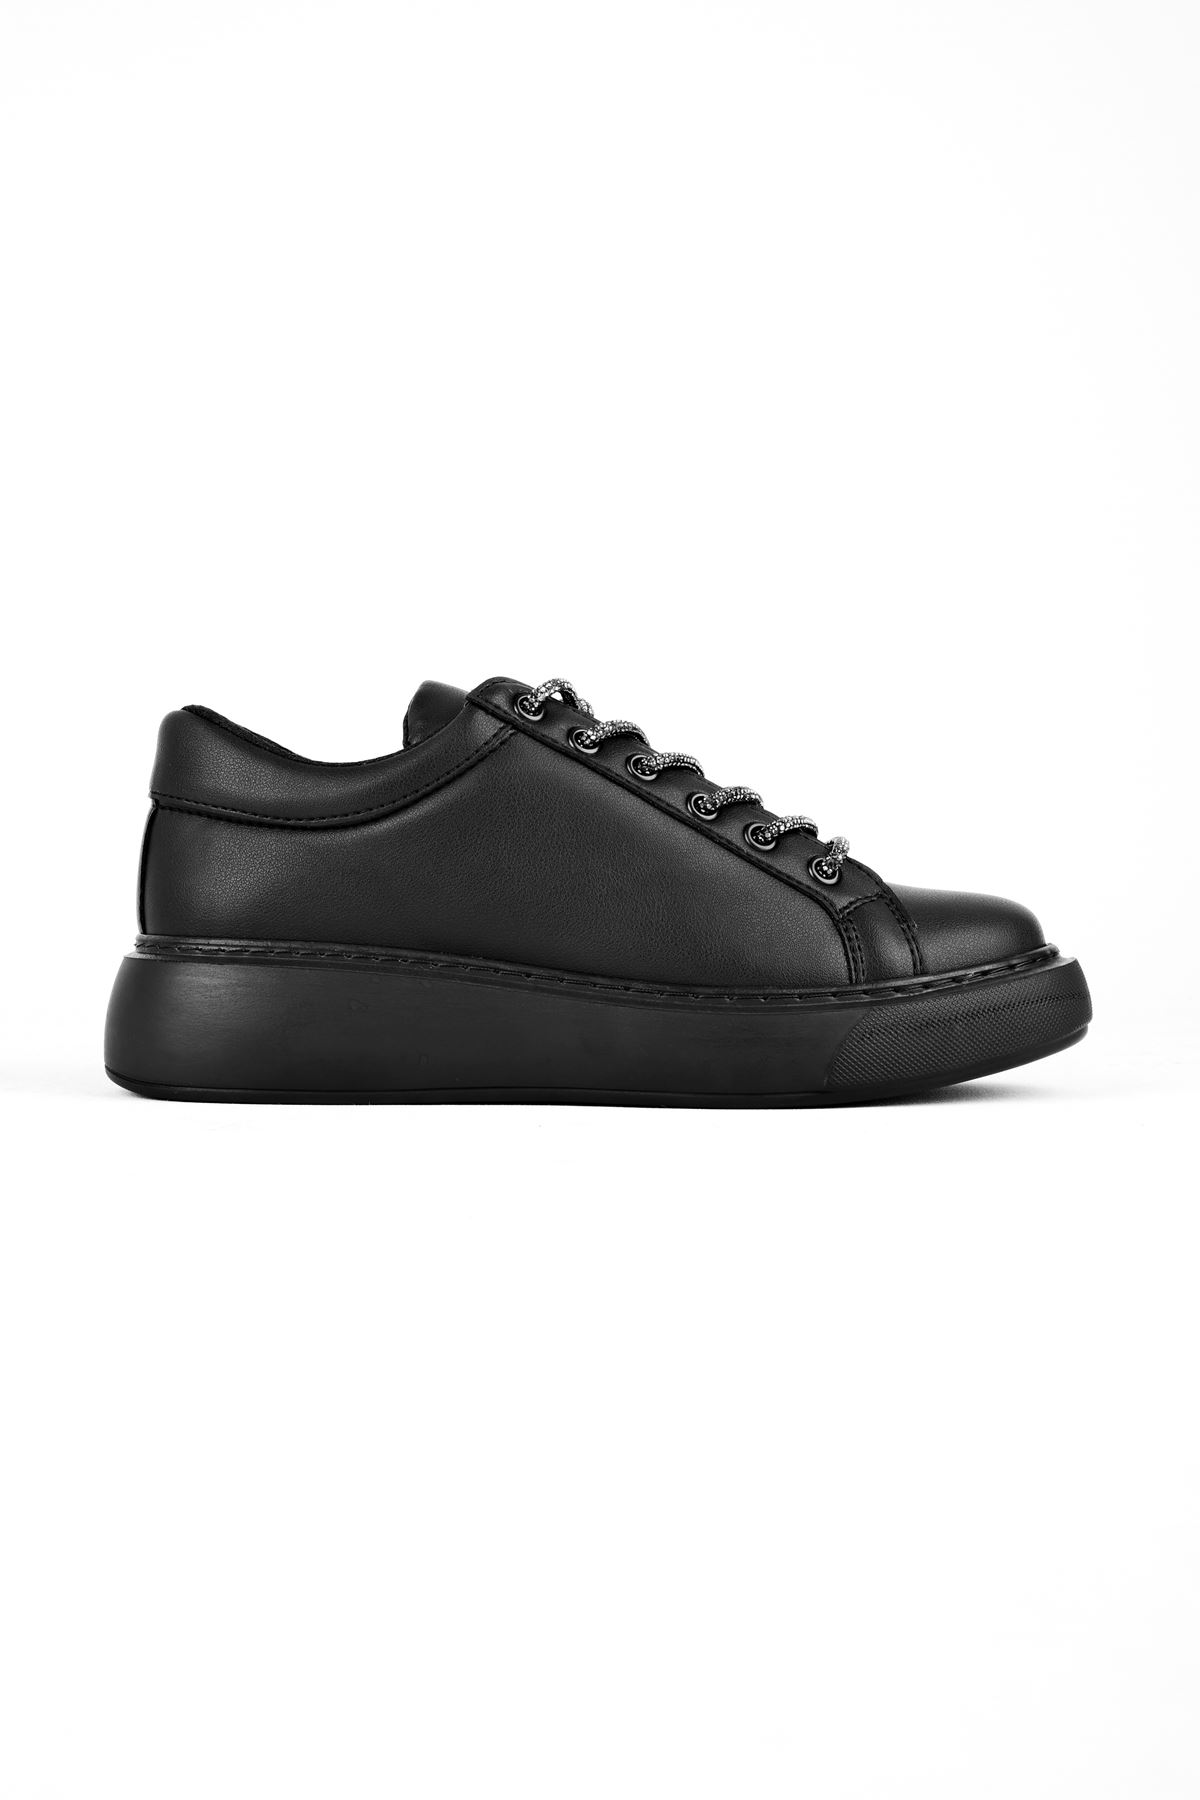 Jamper Kadın Bağcıkları Taşlı Spor Ayakkabı-siyah